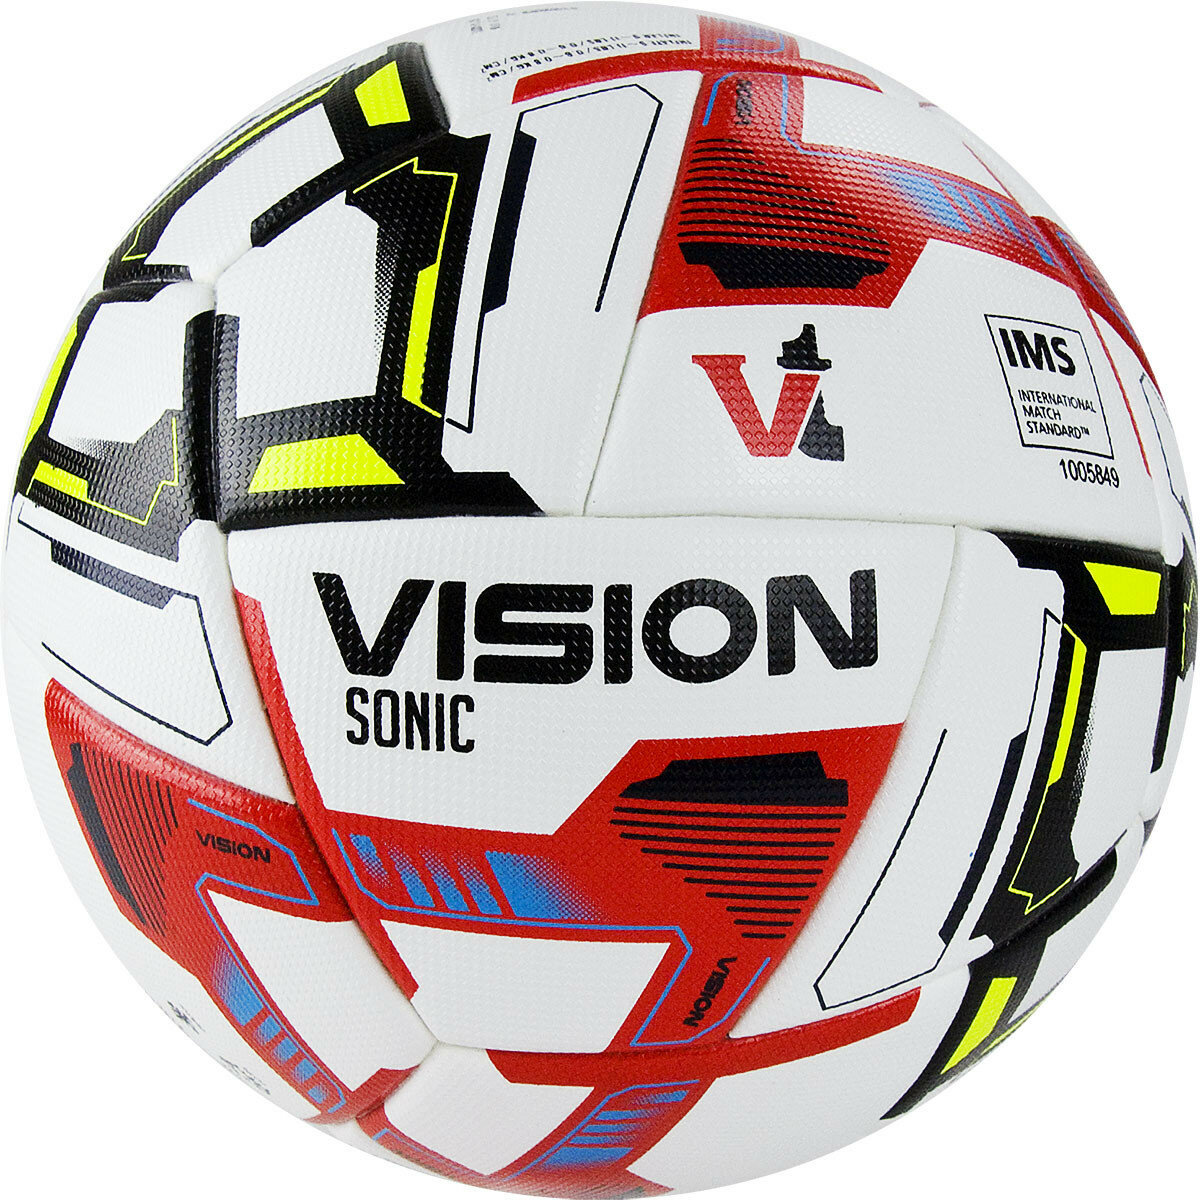 Мяч футбольный VISION Sonic арт. FV321065, р.5, 24 пан, IMS